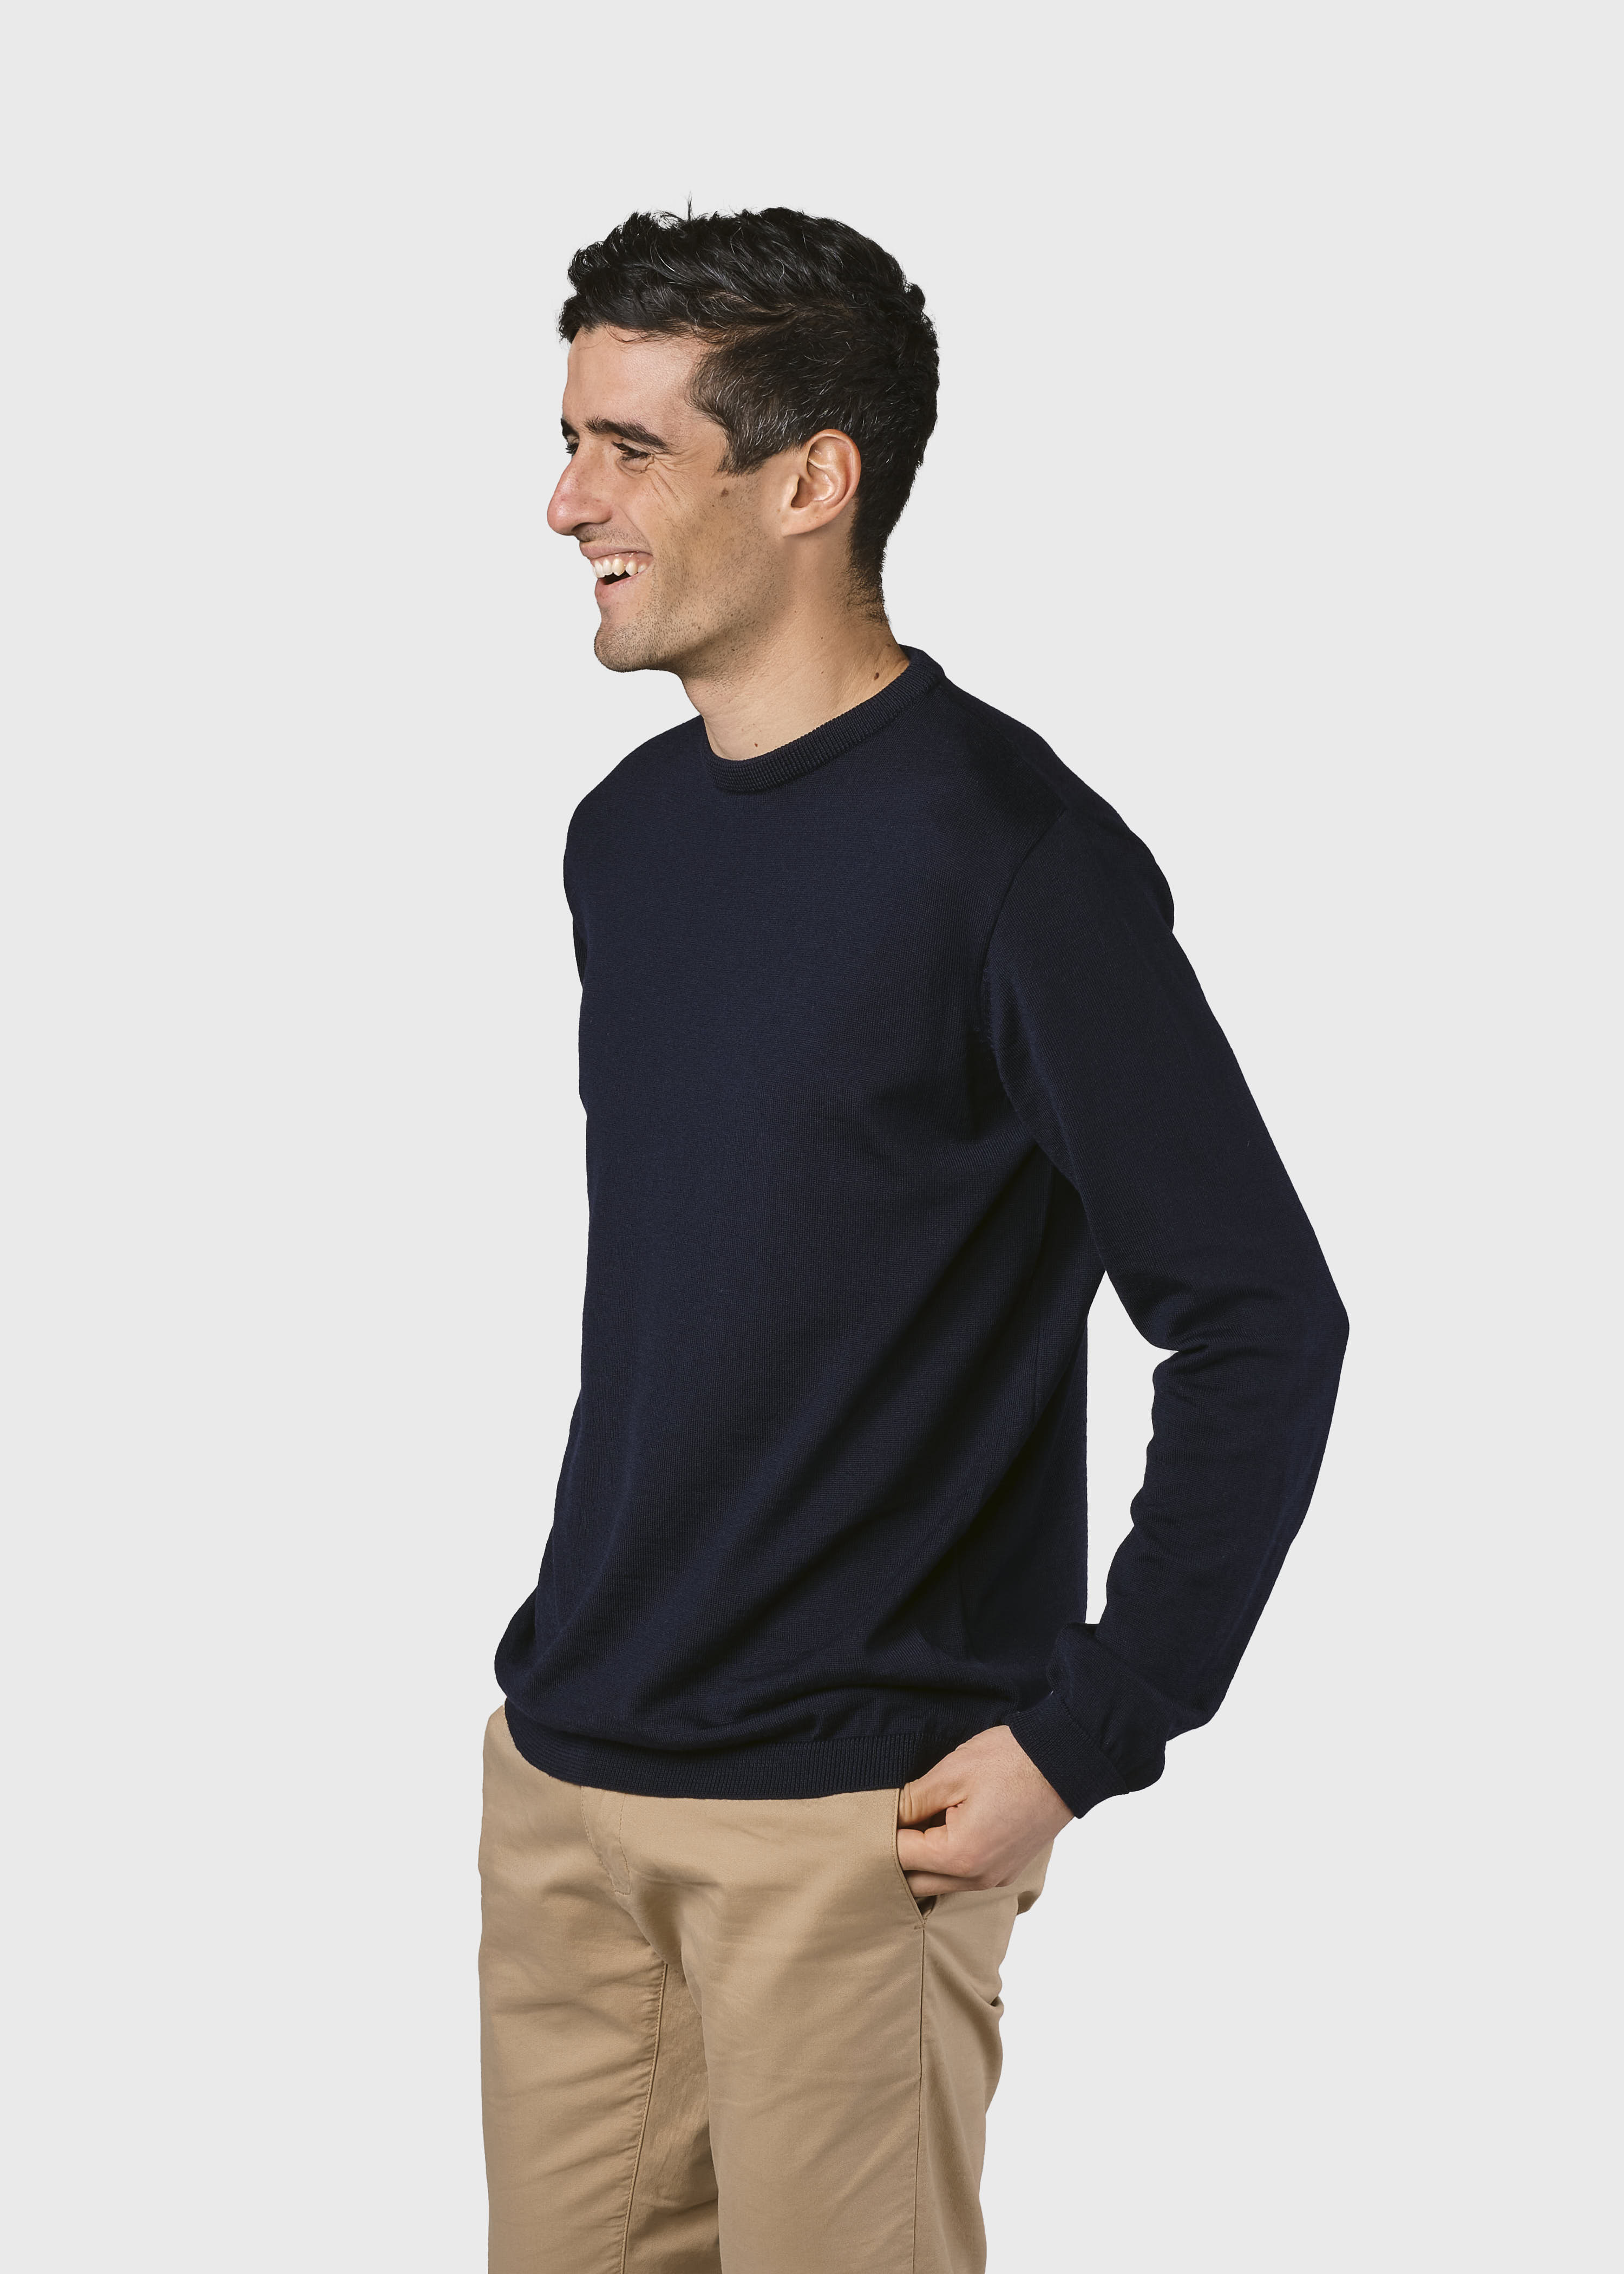 Herren-Strickpullover Mens basic merino knit Navy (100% Wolle) 